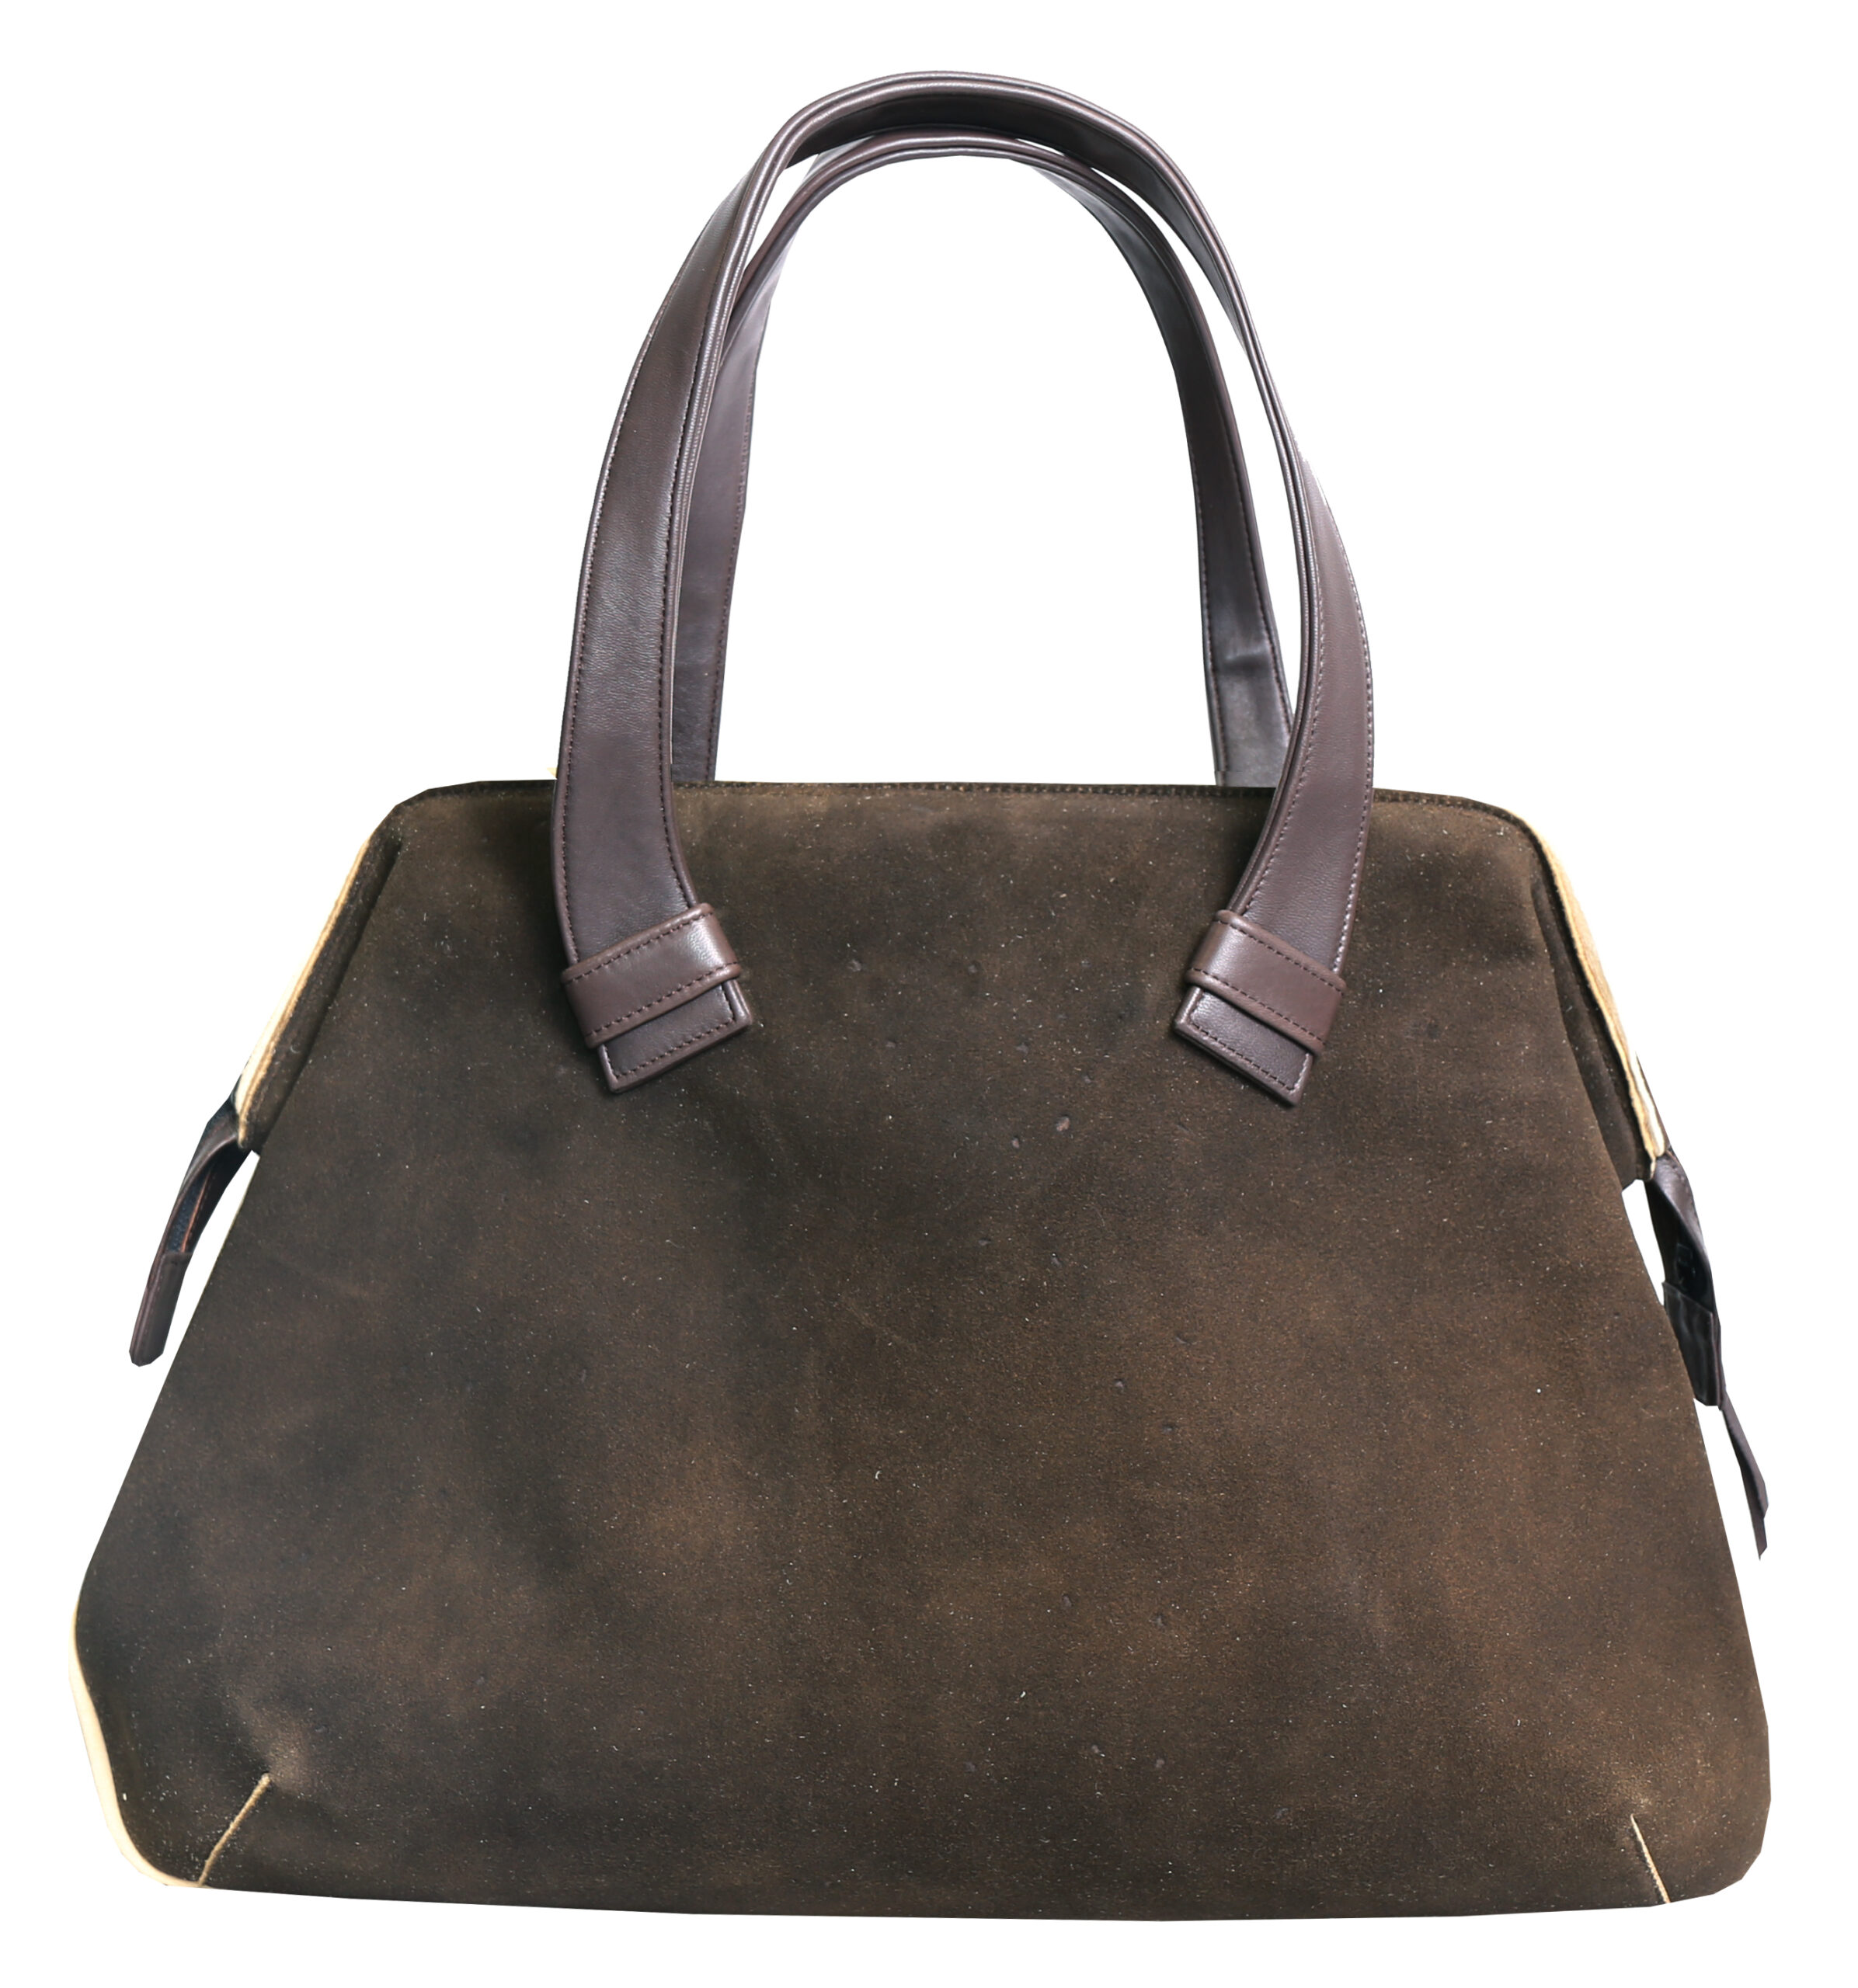 Deer Leather Bag “Capri Bag”, maple